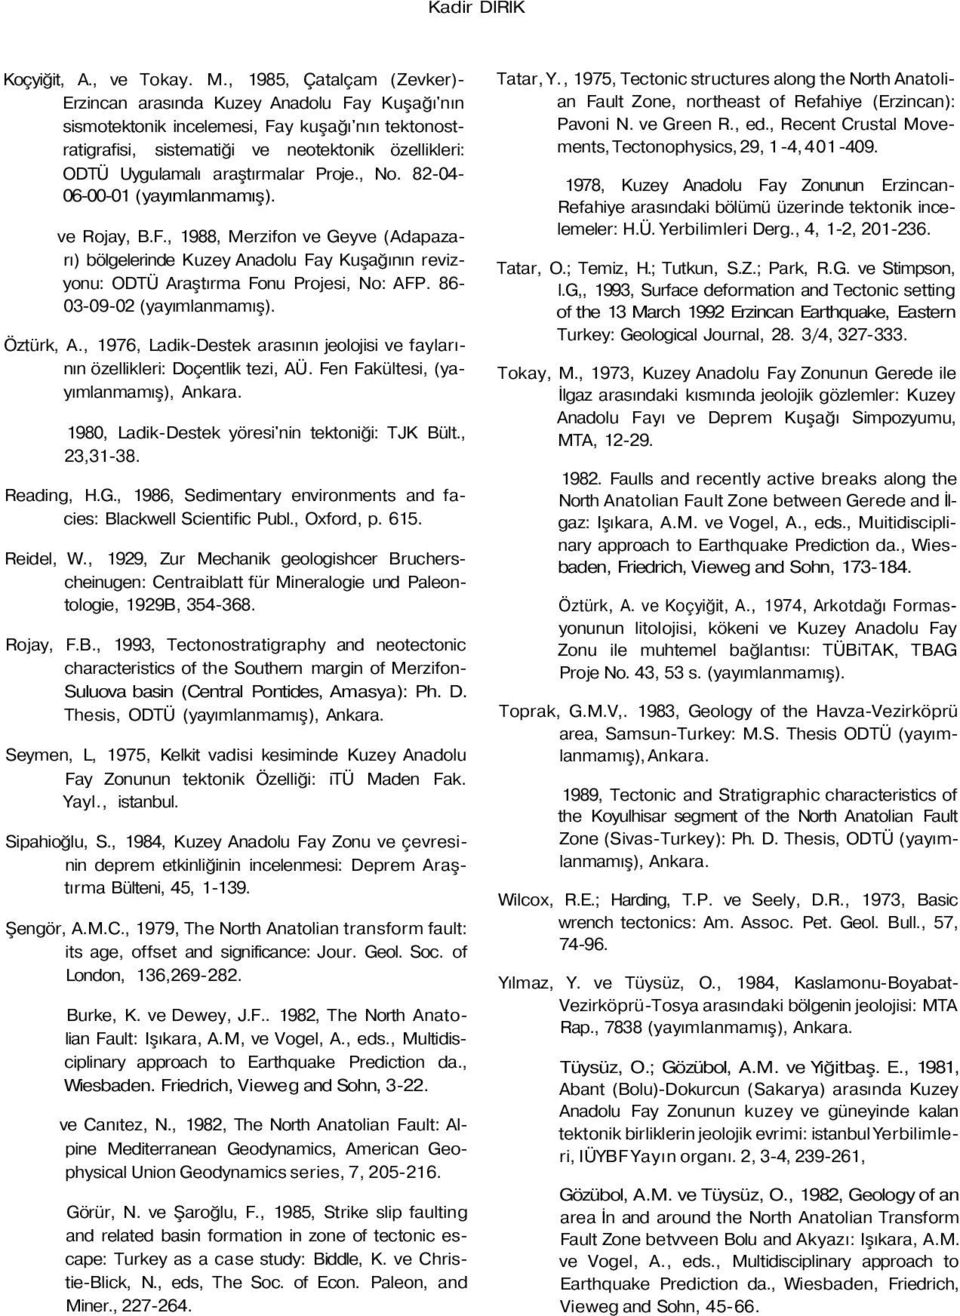 araştırmalar Proje., No. 82-04- 06-00-01 (yayımlanmamış). ve Rojay, B.F., 1988, Merzifon ve Geyve (Adapazarı) bölgelerinde Kuzey Anadolu Fay Kuşağının revizyonu: ODTÜ Araştırma Fonu Projesi, No: AFP.